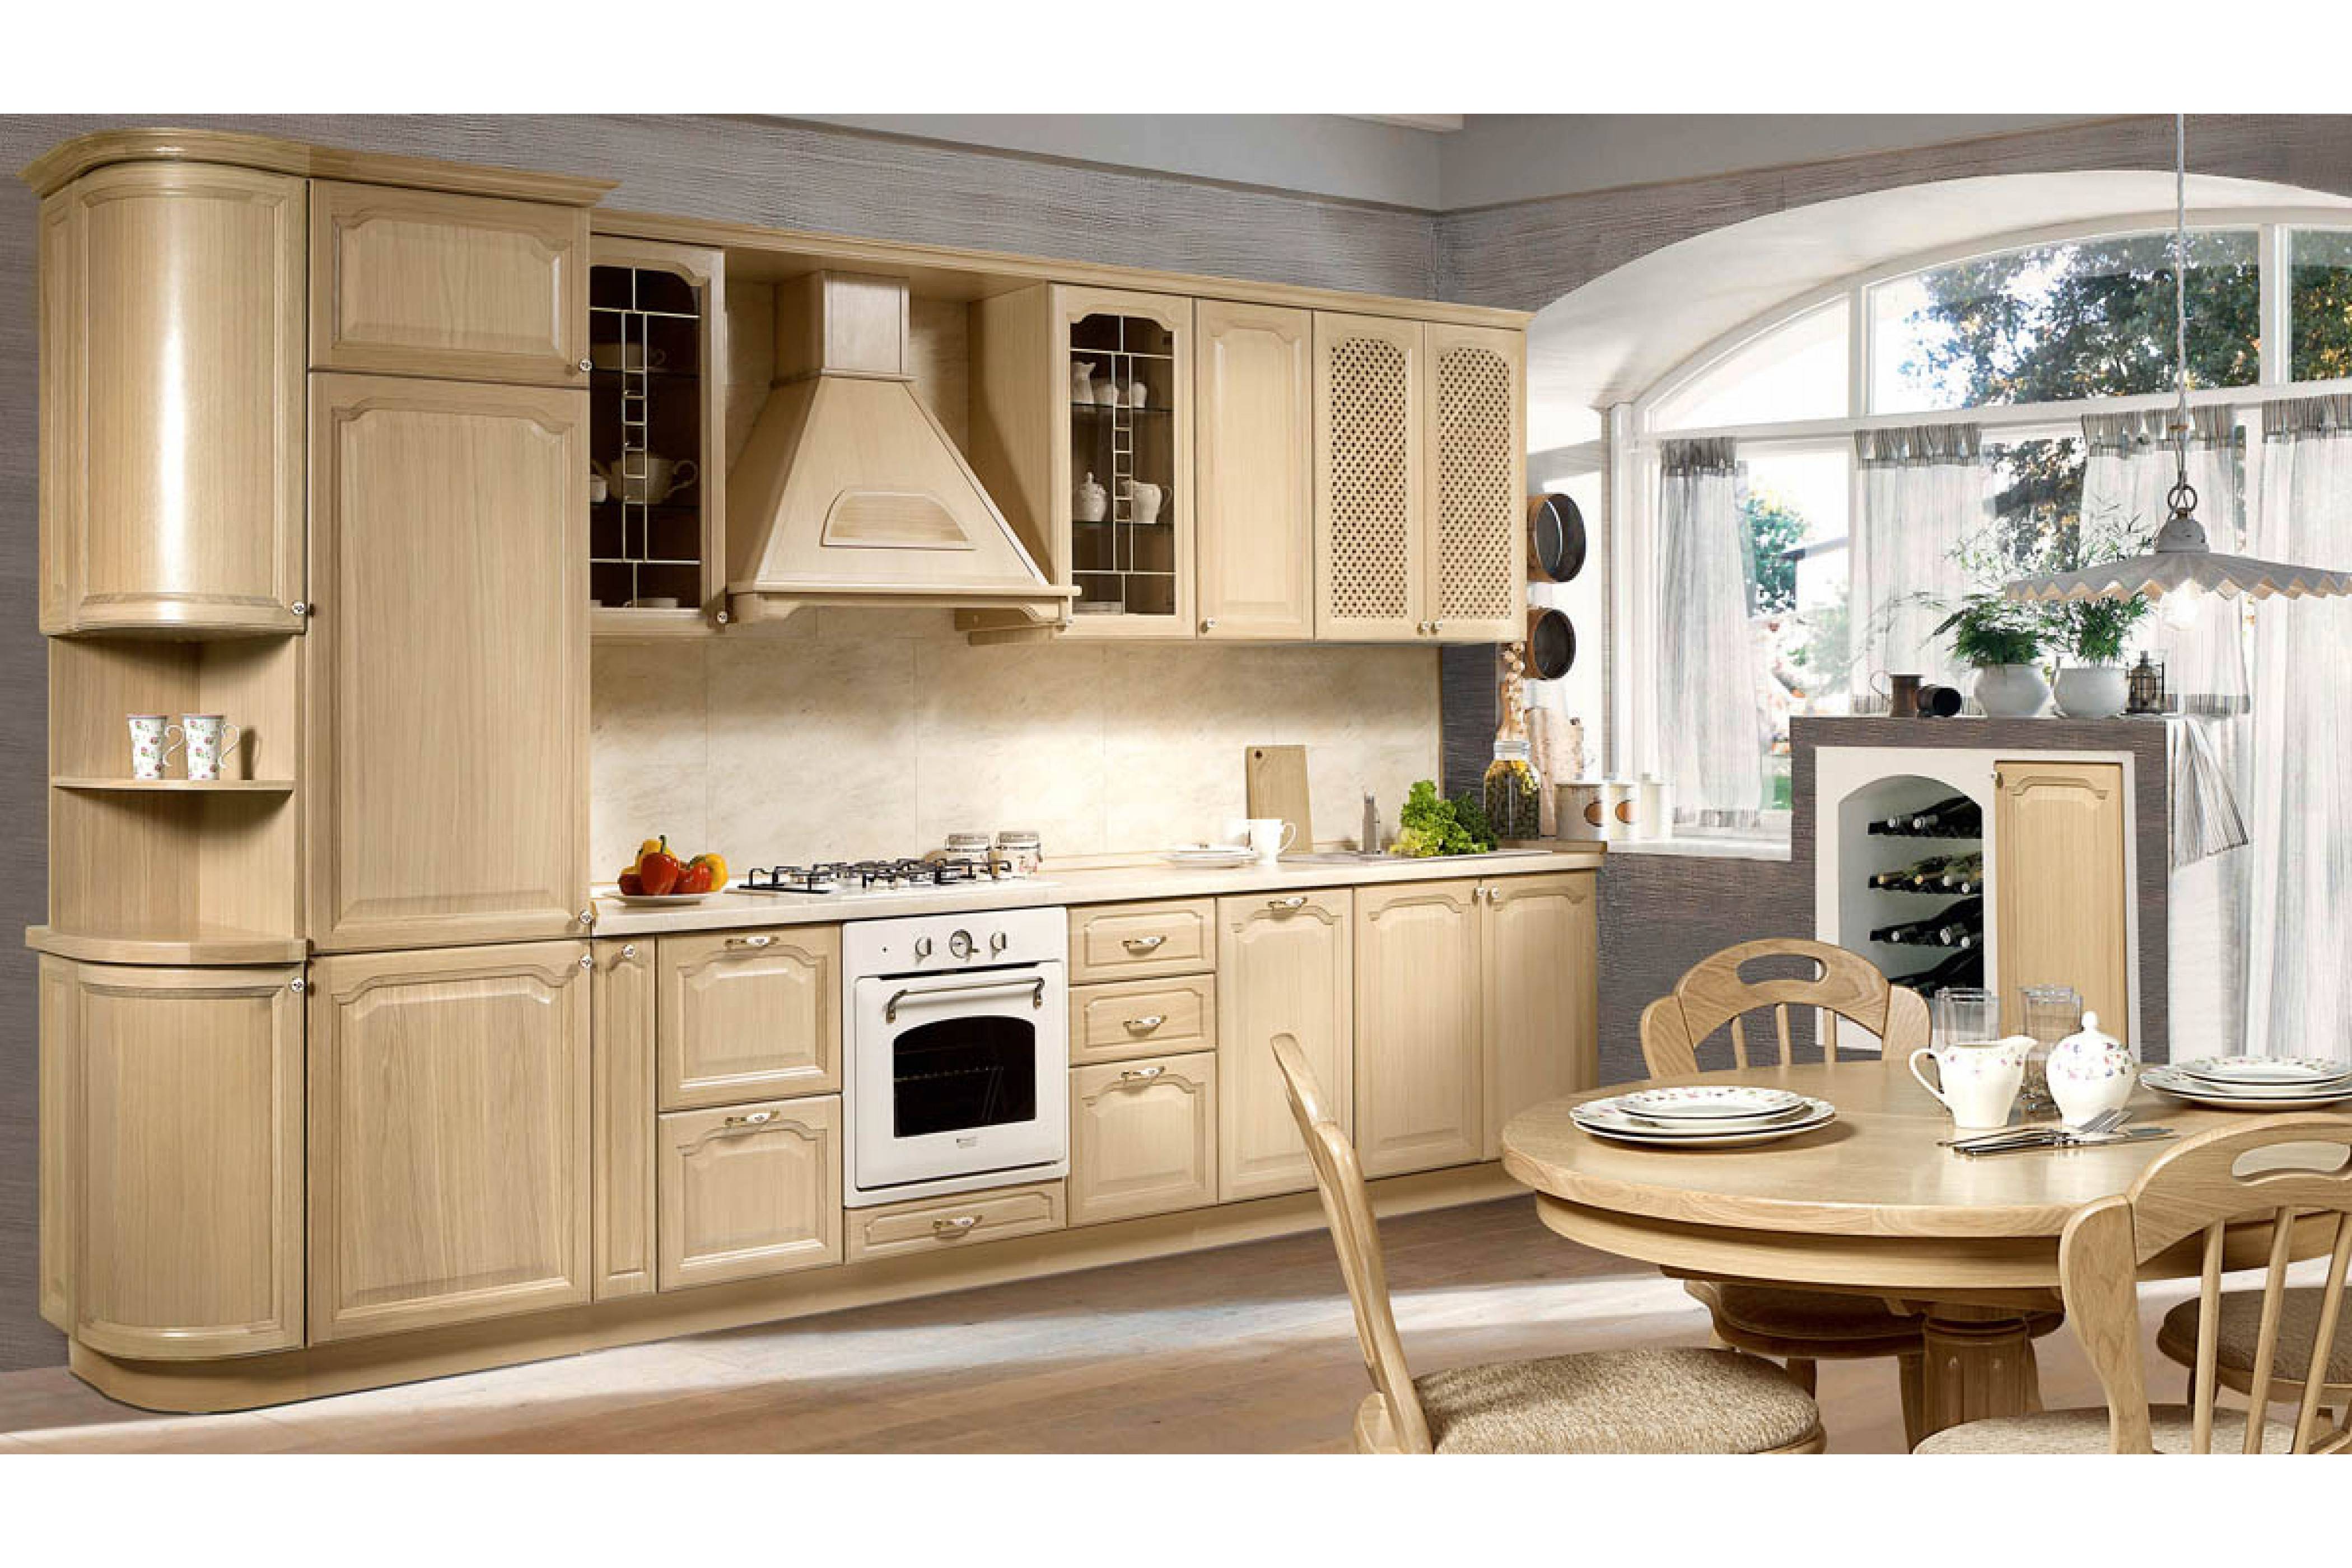 Ami-мебель кухни (38 фото): отзывы об угловых моделях белла и венеция, лиза и других